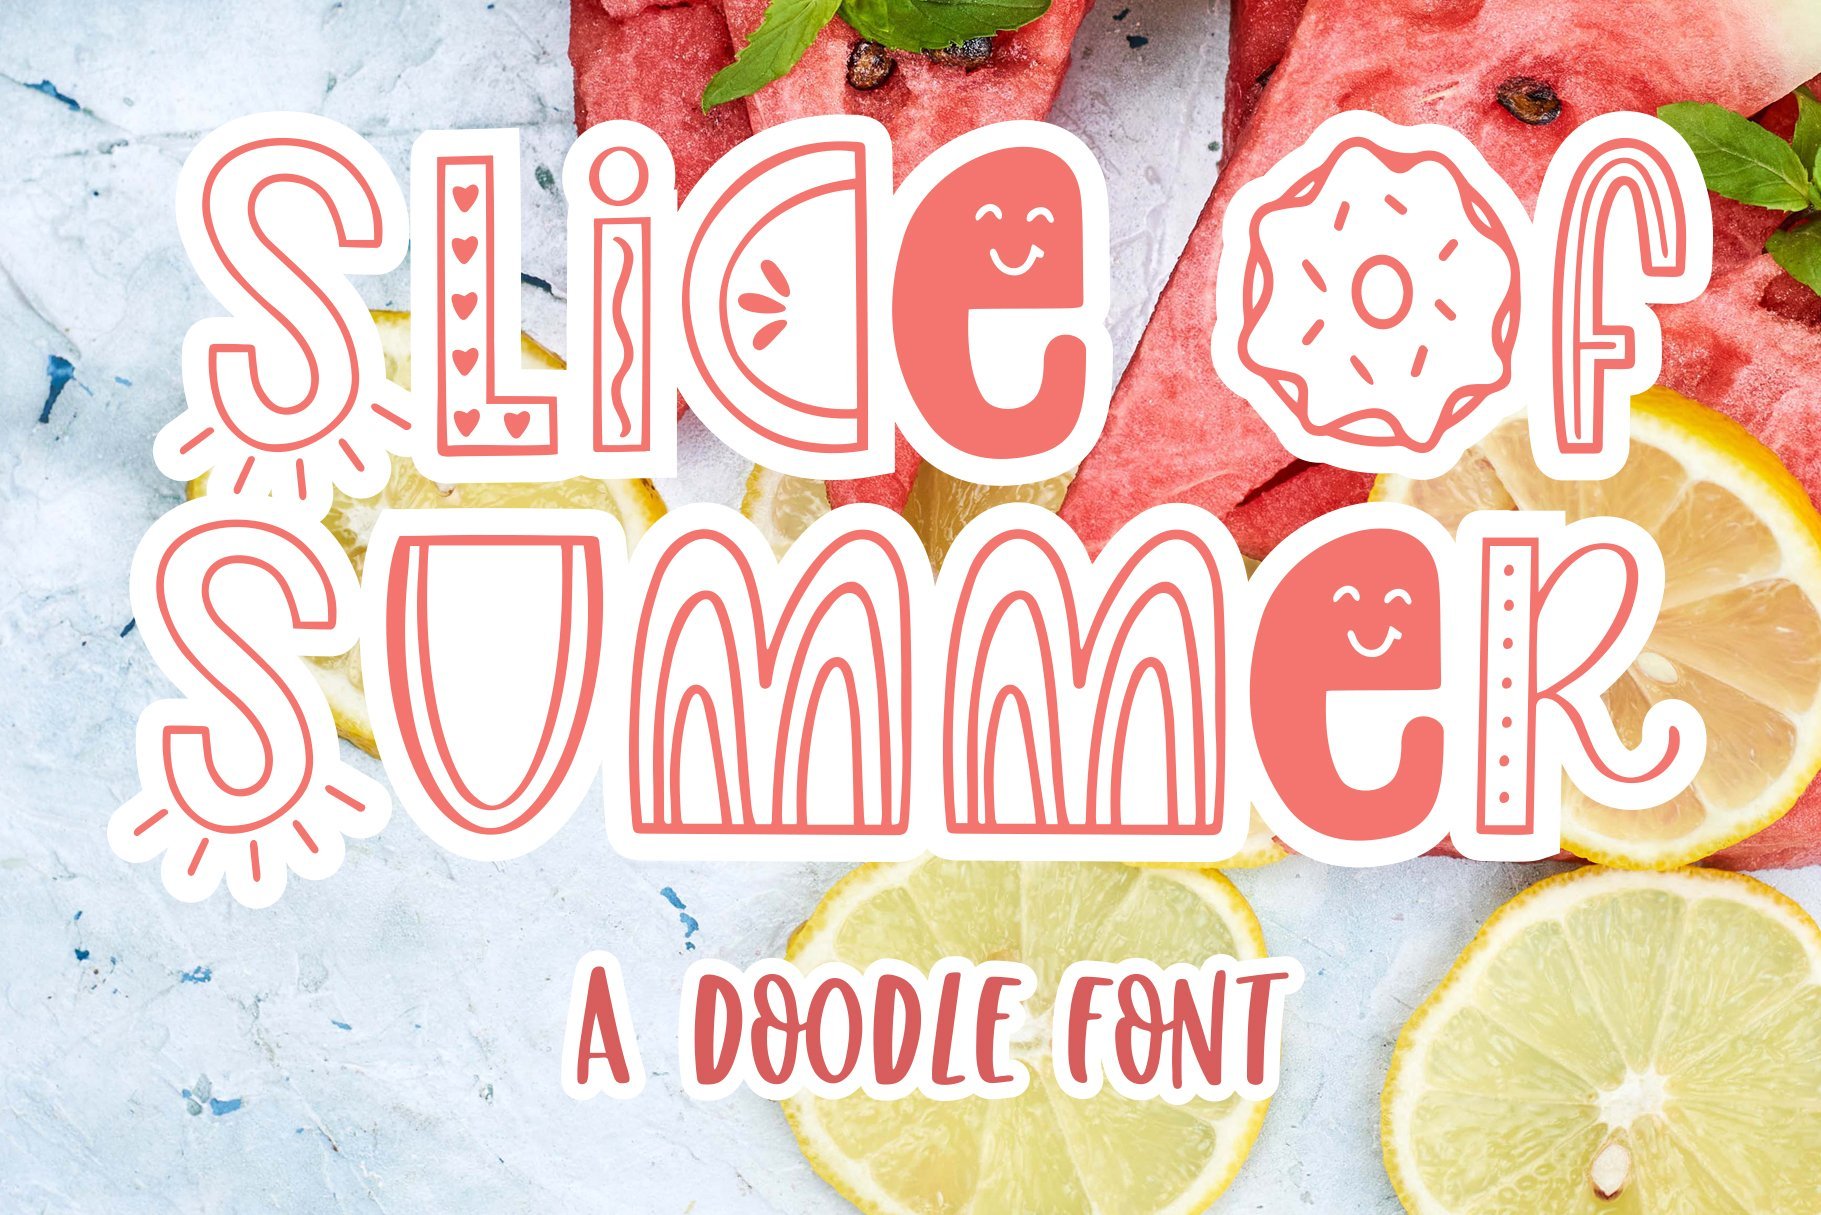 Slice of Summer, Doodle Font cover image.